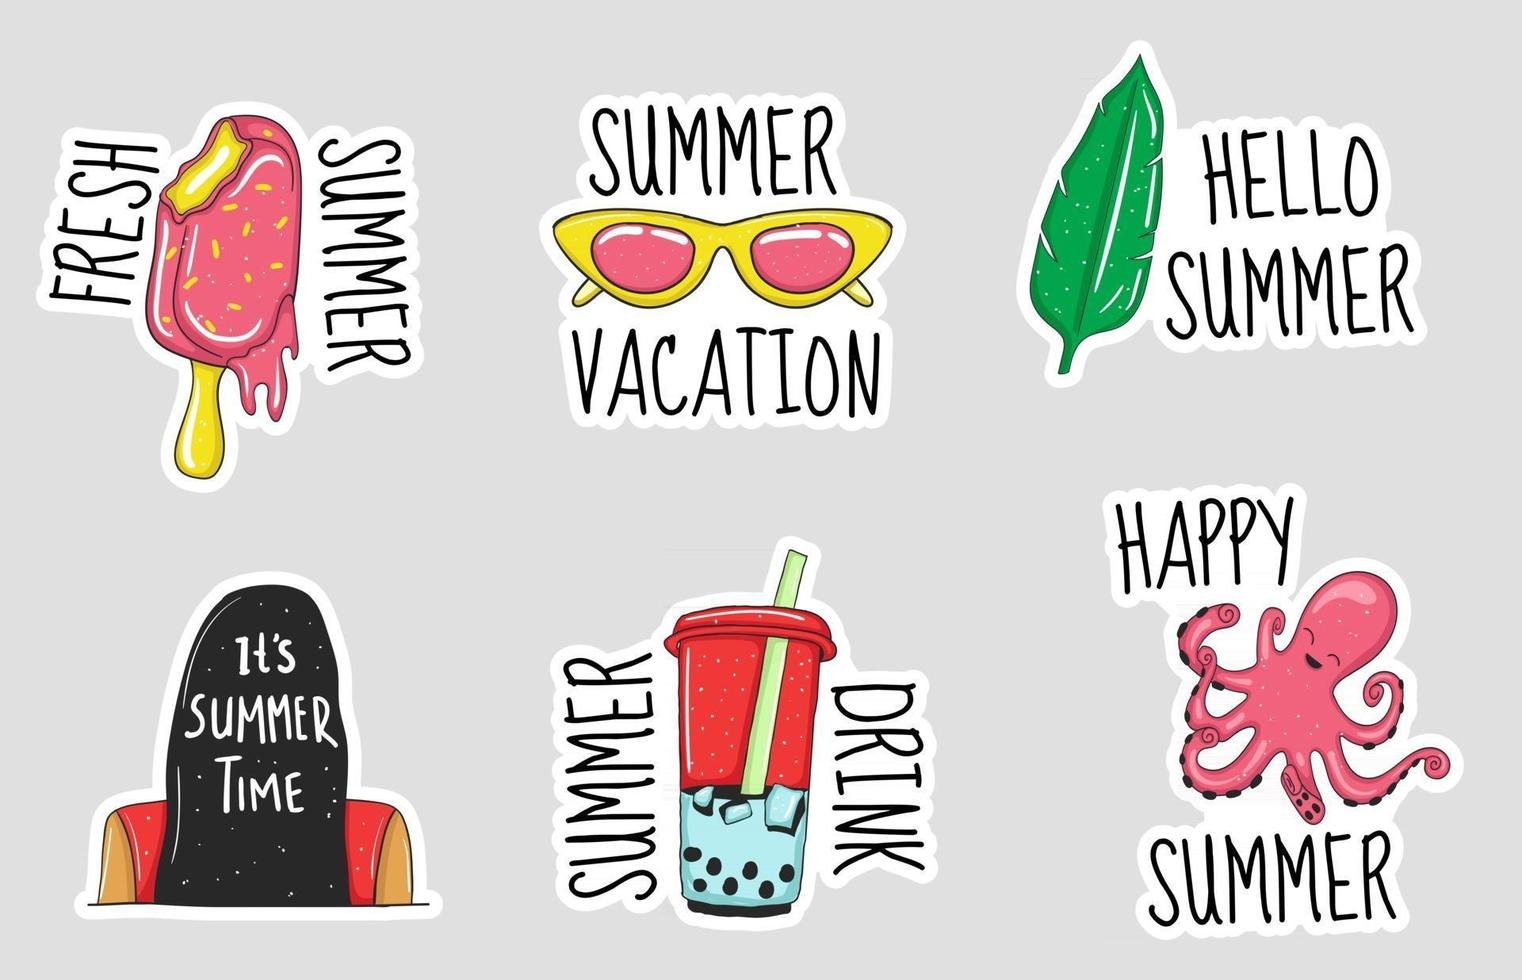 kleurrijke handgetekende zomer element stickers collectie vector